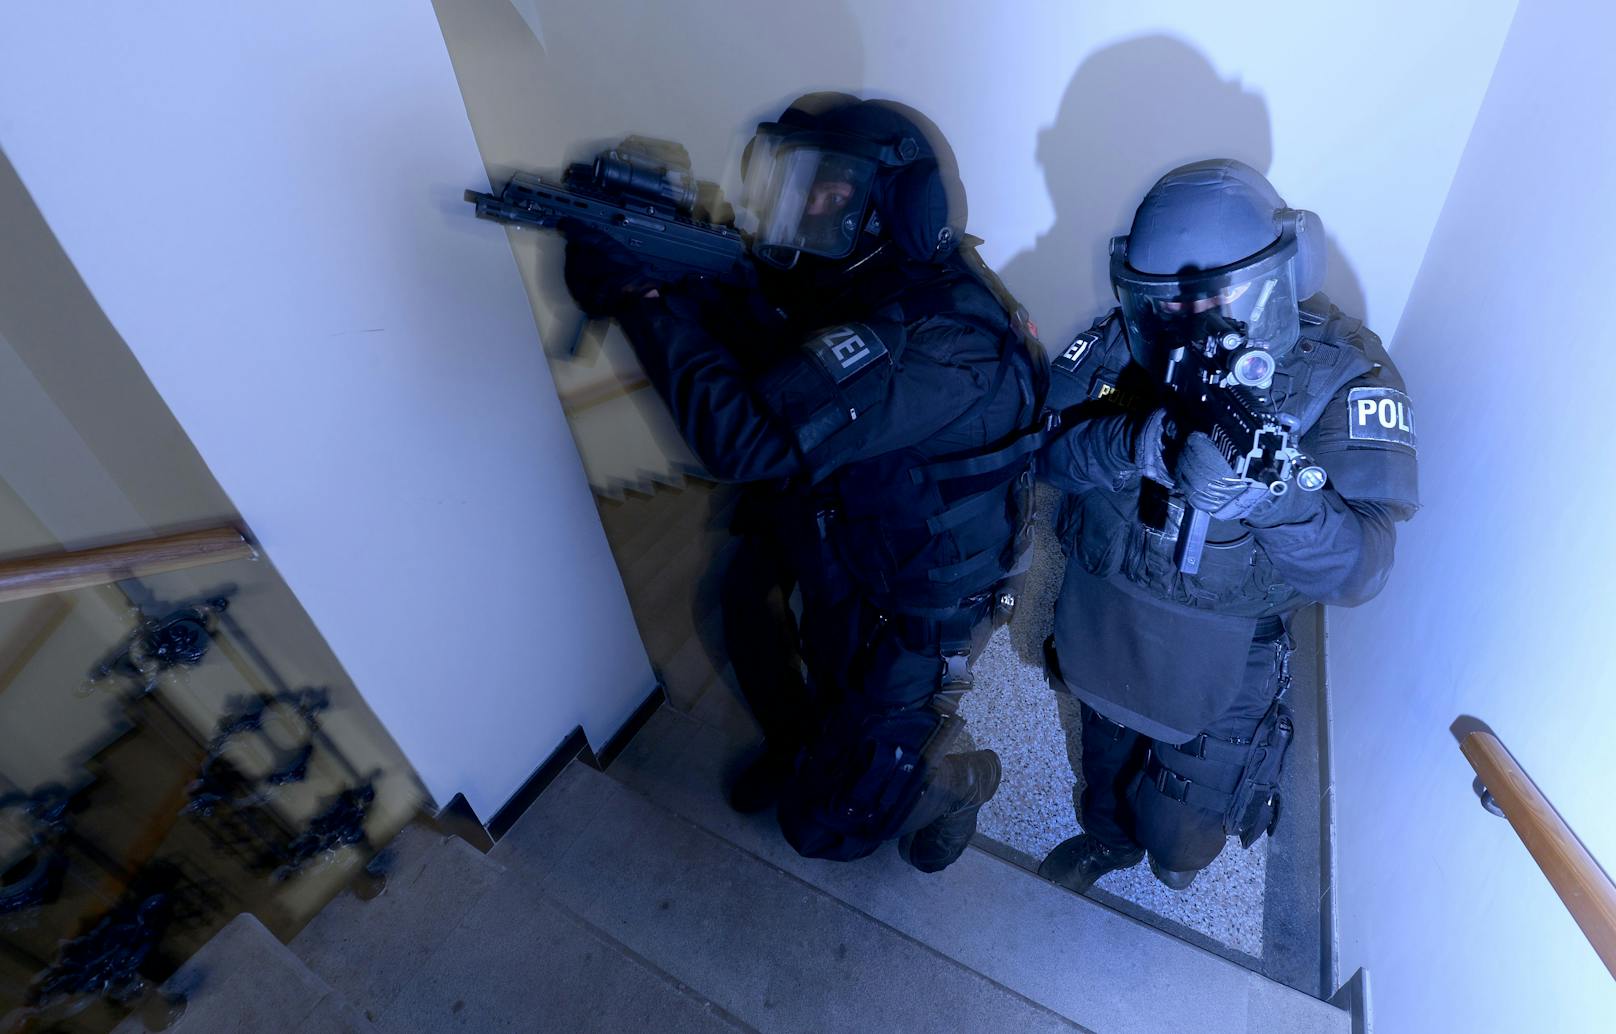 Polizisten der Sondereinheit "Einsatzkommando Cobra" in einer Übungssituation. (Symbolbild)